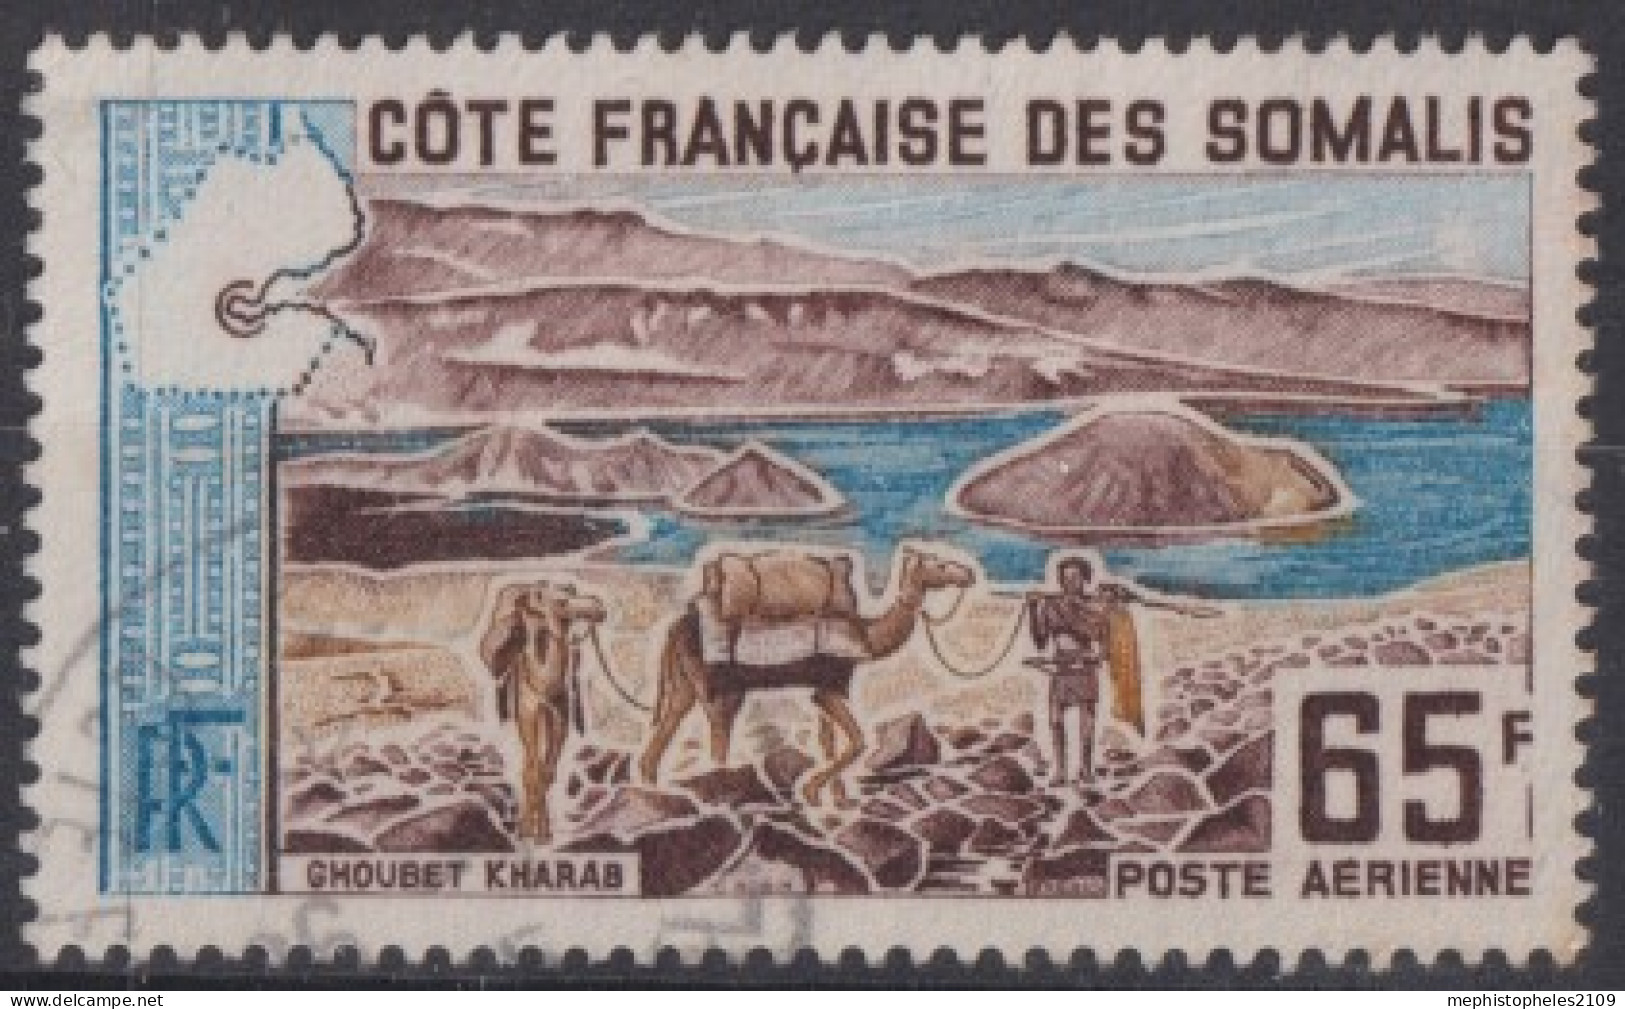 COTE FRANCAISE DES SOMALIS 1965 - Canceled - YT 44 - Poste Aérienne - Used Stamps